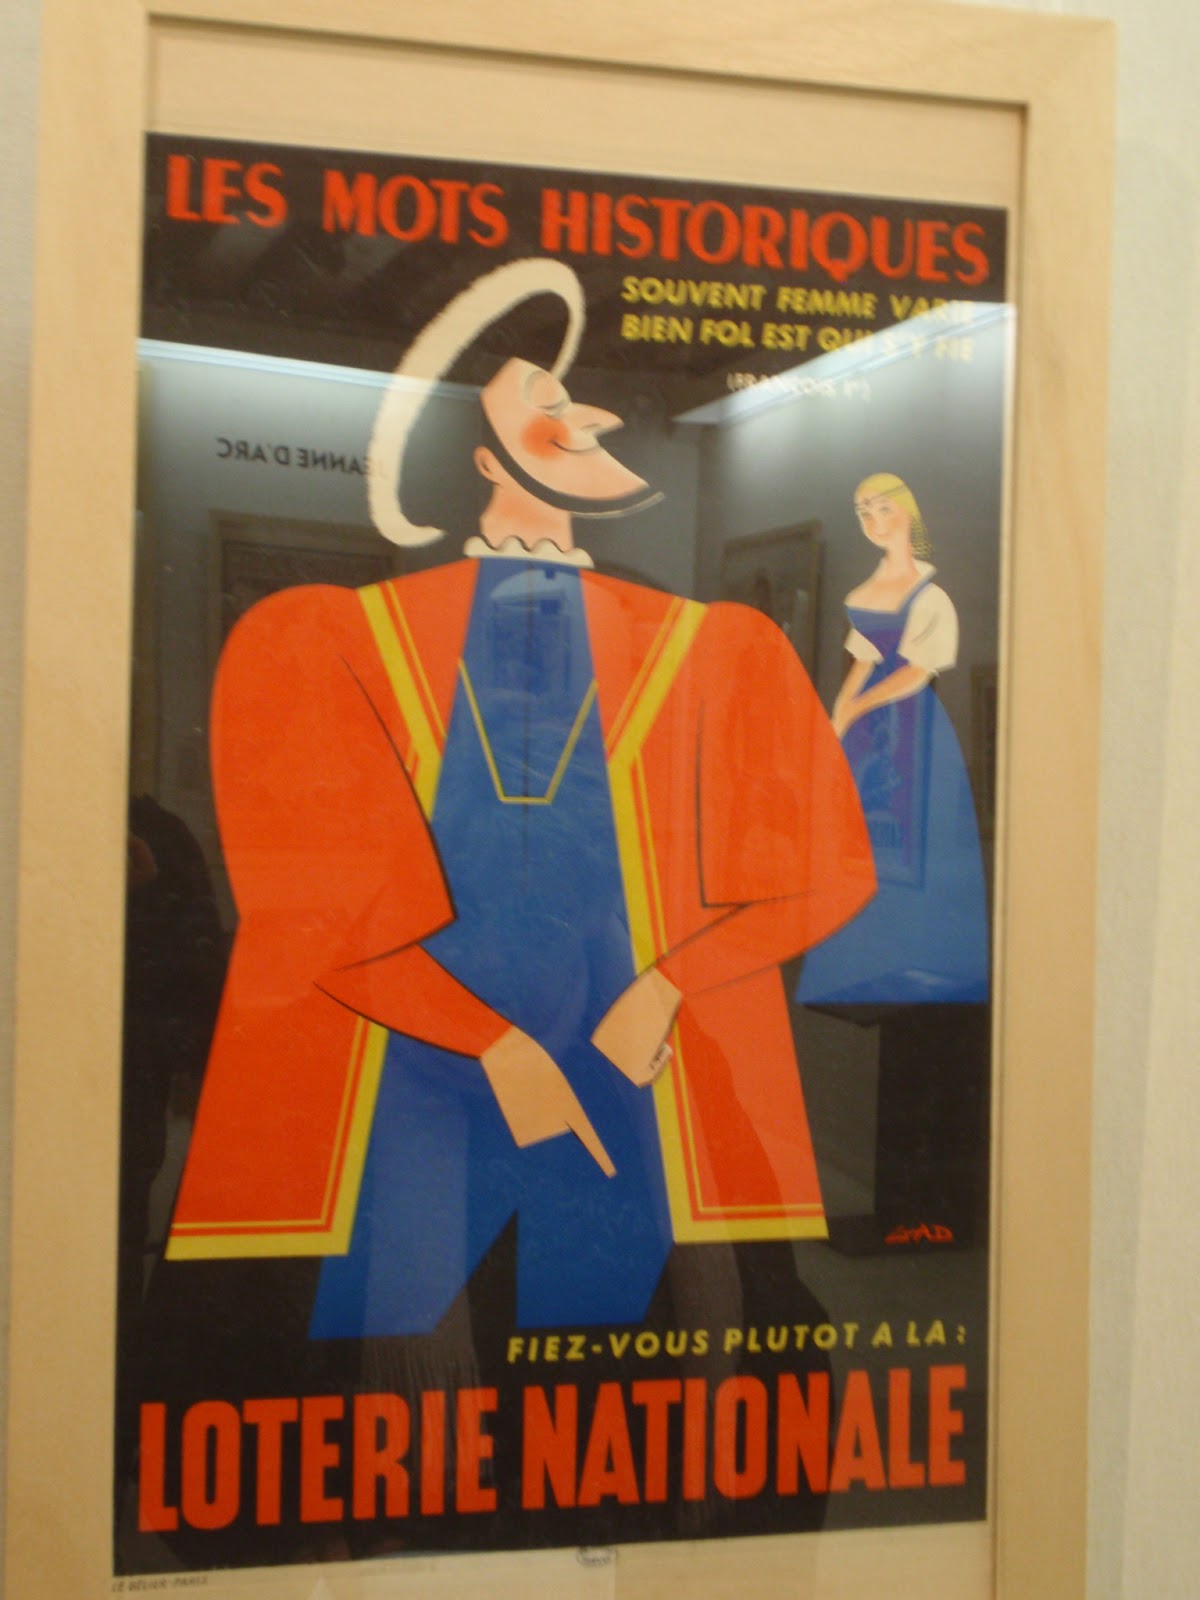 カレイドスコープ・デザイン・パリ: 広告の語るフランスの歴史展